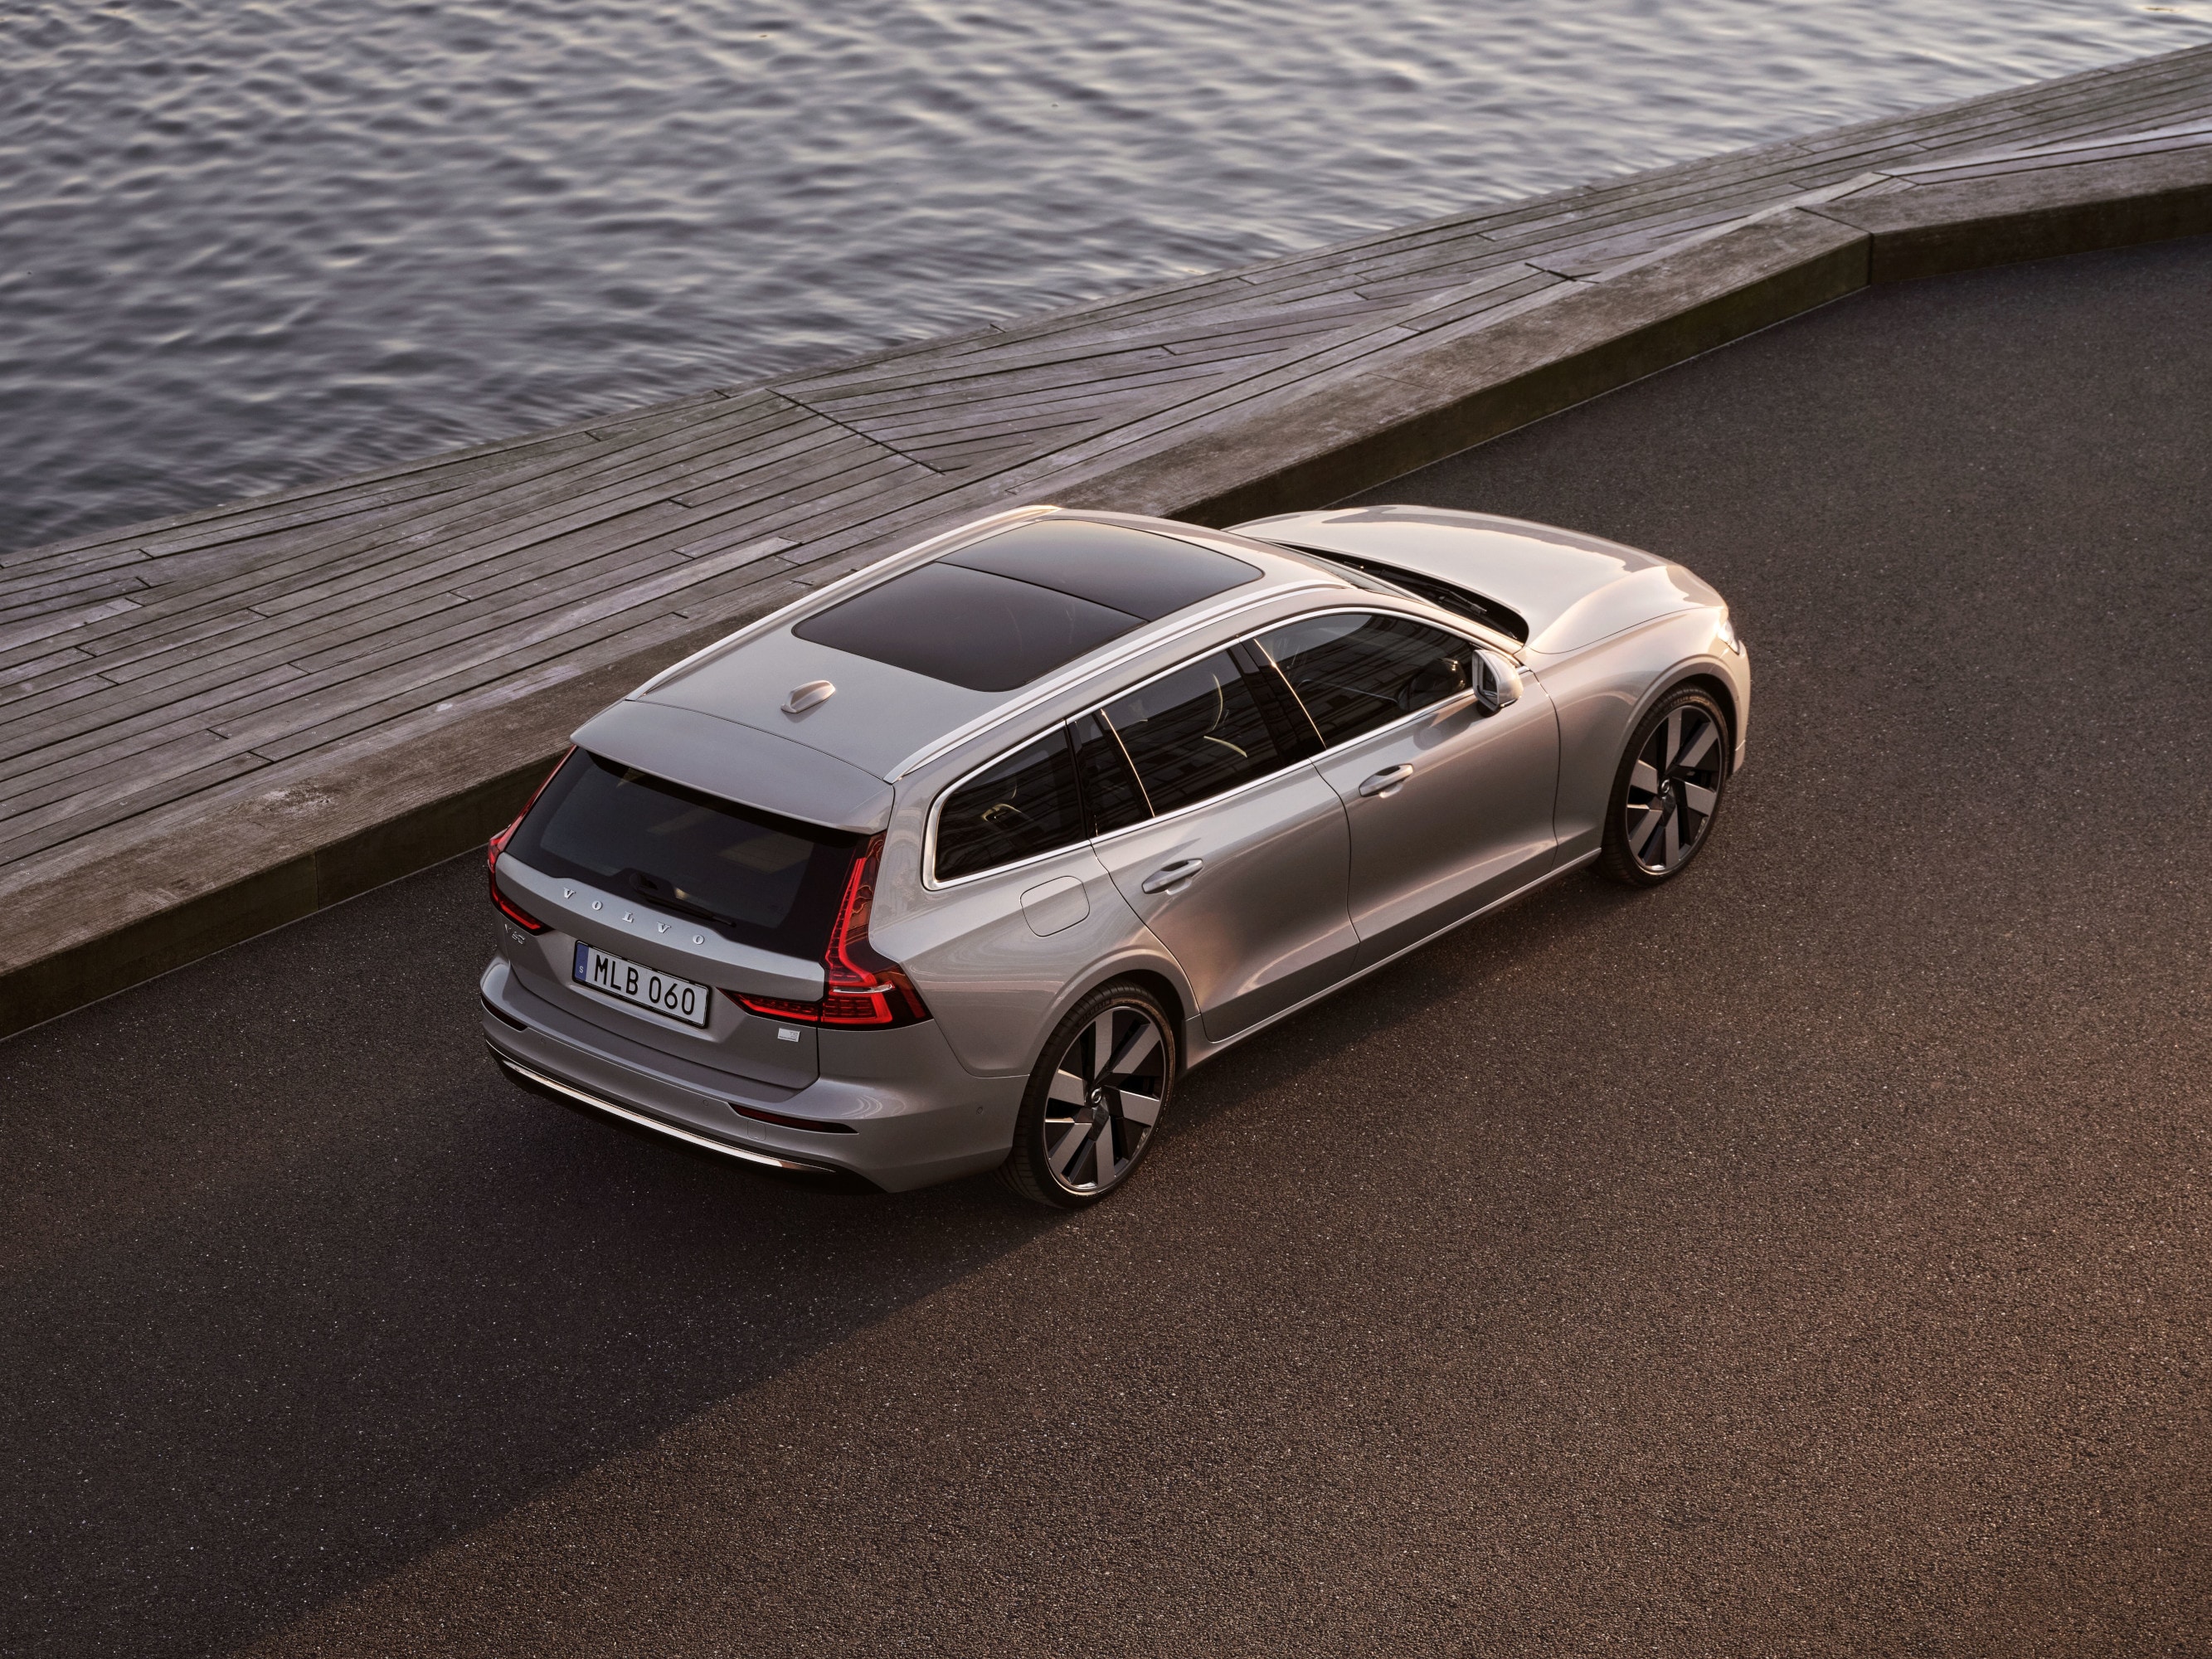 Sechs Volvo Fahrzeuge in der Farbe Crystal White Pearl stehen bei Sonnenuntergang aufgereiht auf einem Parkdeck